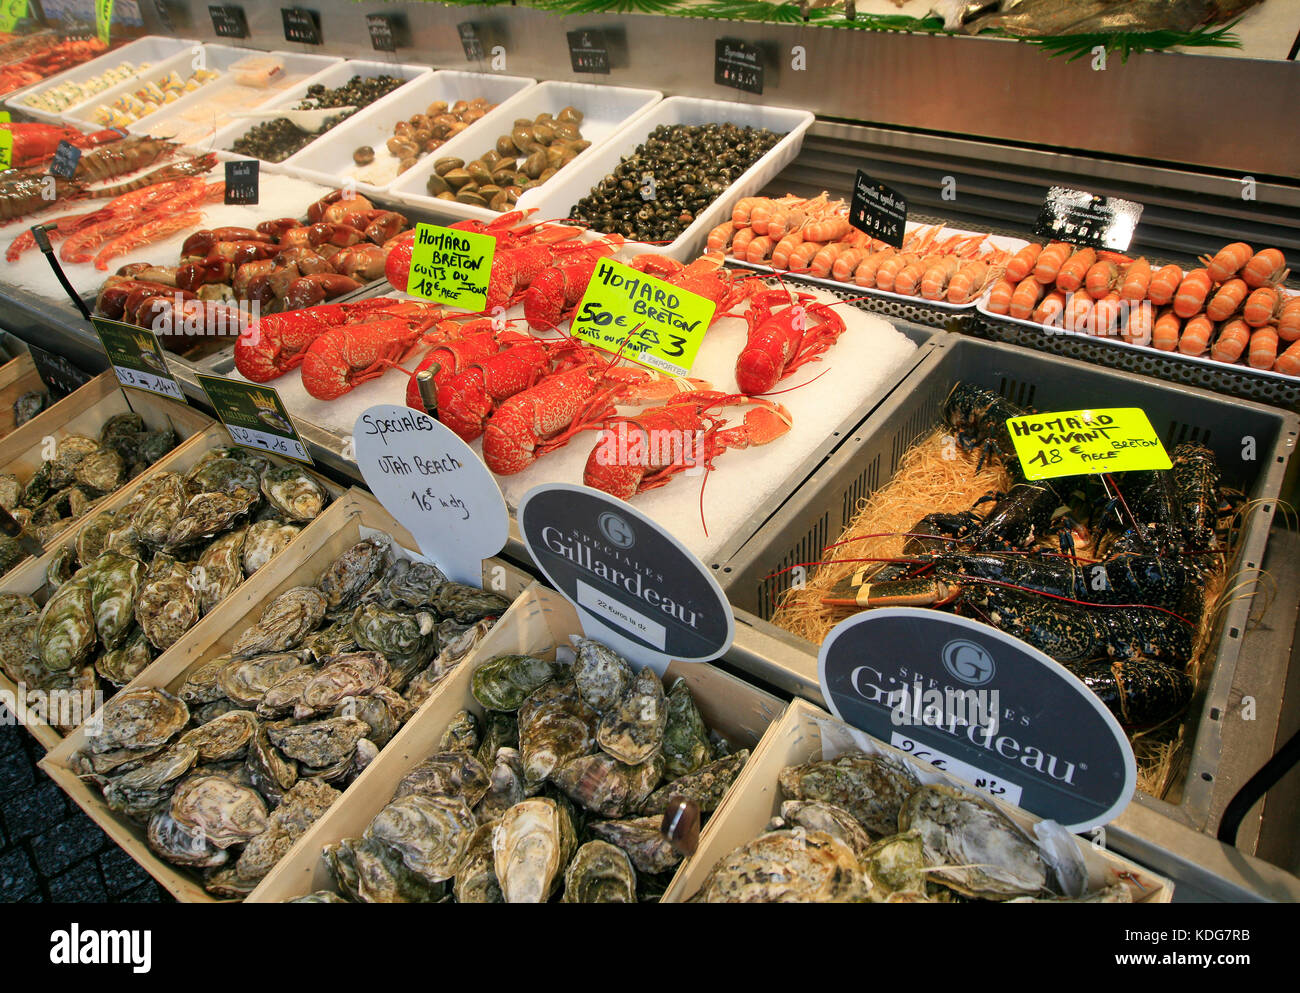 Mercato del pesce in stallo in Francia con una varietà di pesce e frutti di mare in offerta con i cartellini dei prezzi Foto Stock